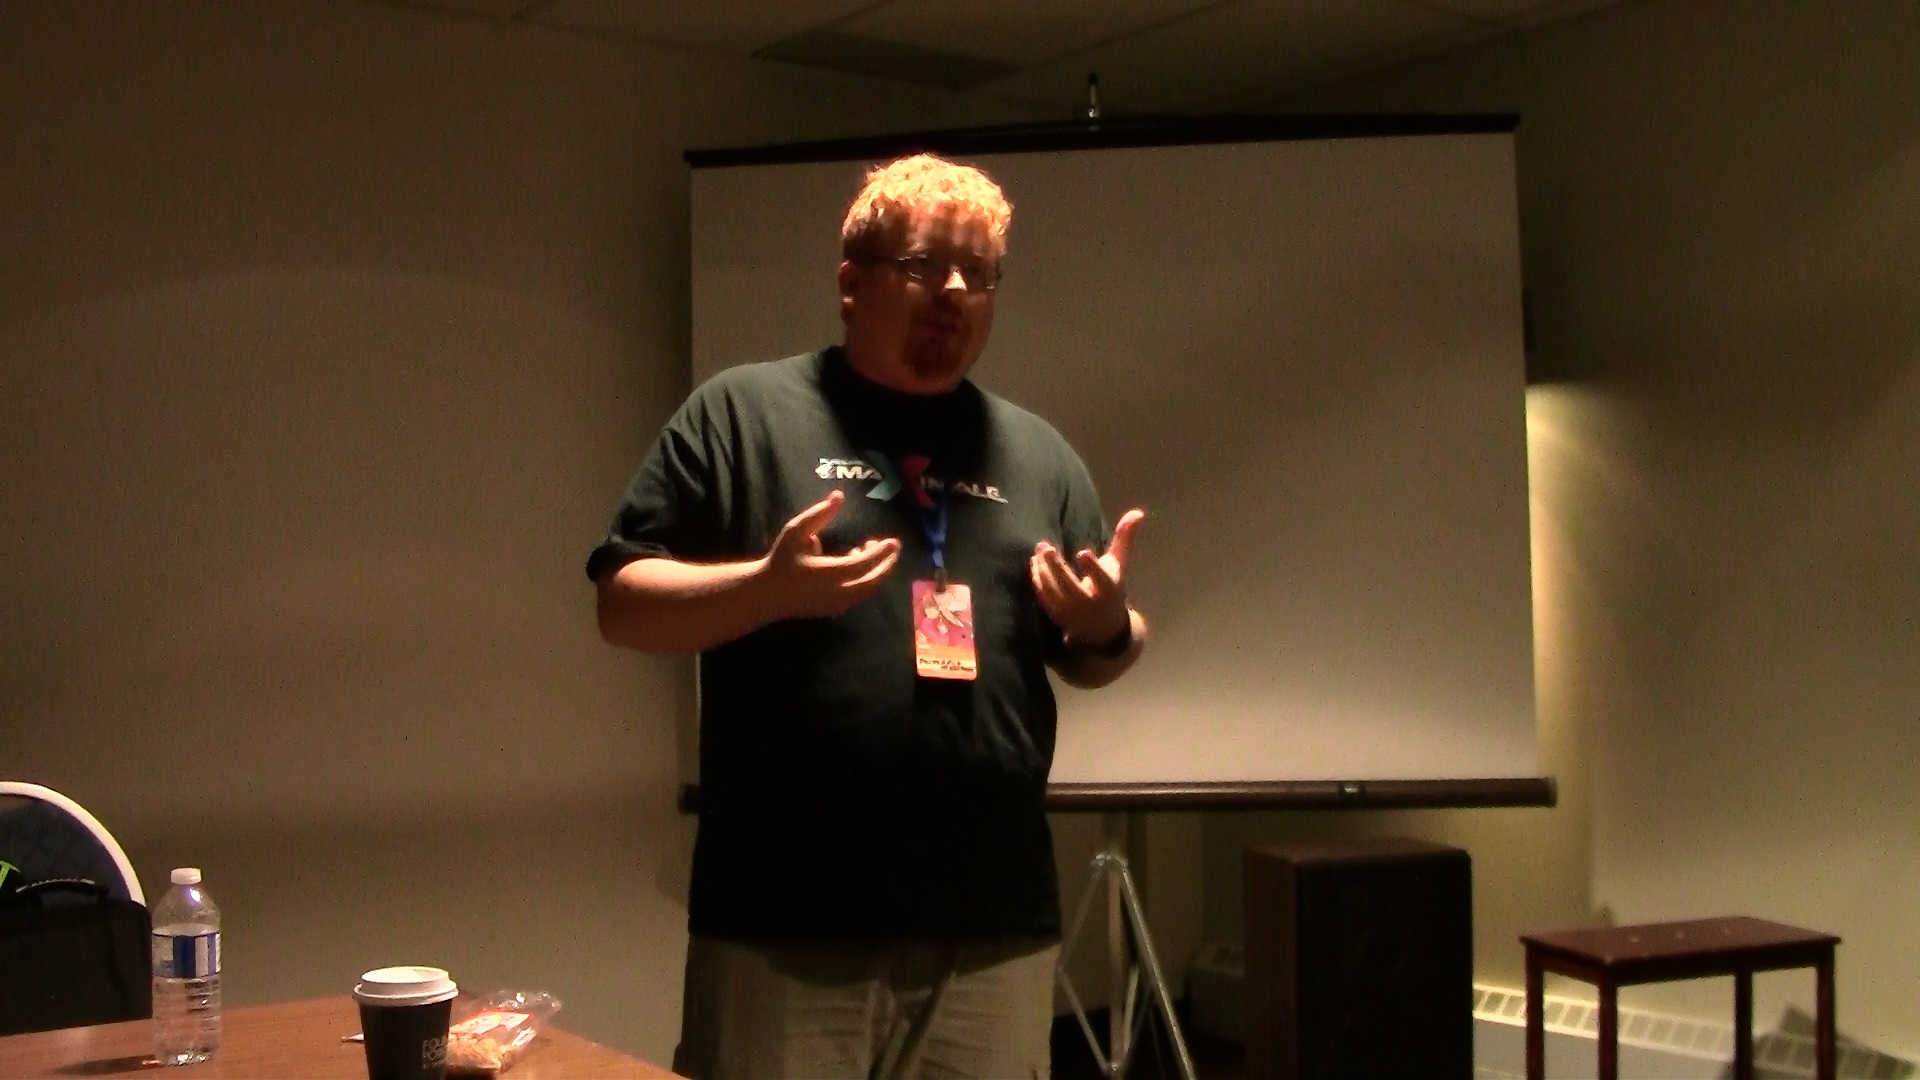 Andrew Castegan entrain d'animer une discussion sur le PC dans la scène actuelle du jeu vidéo